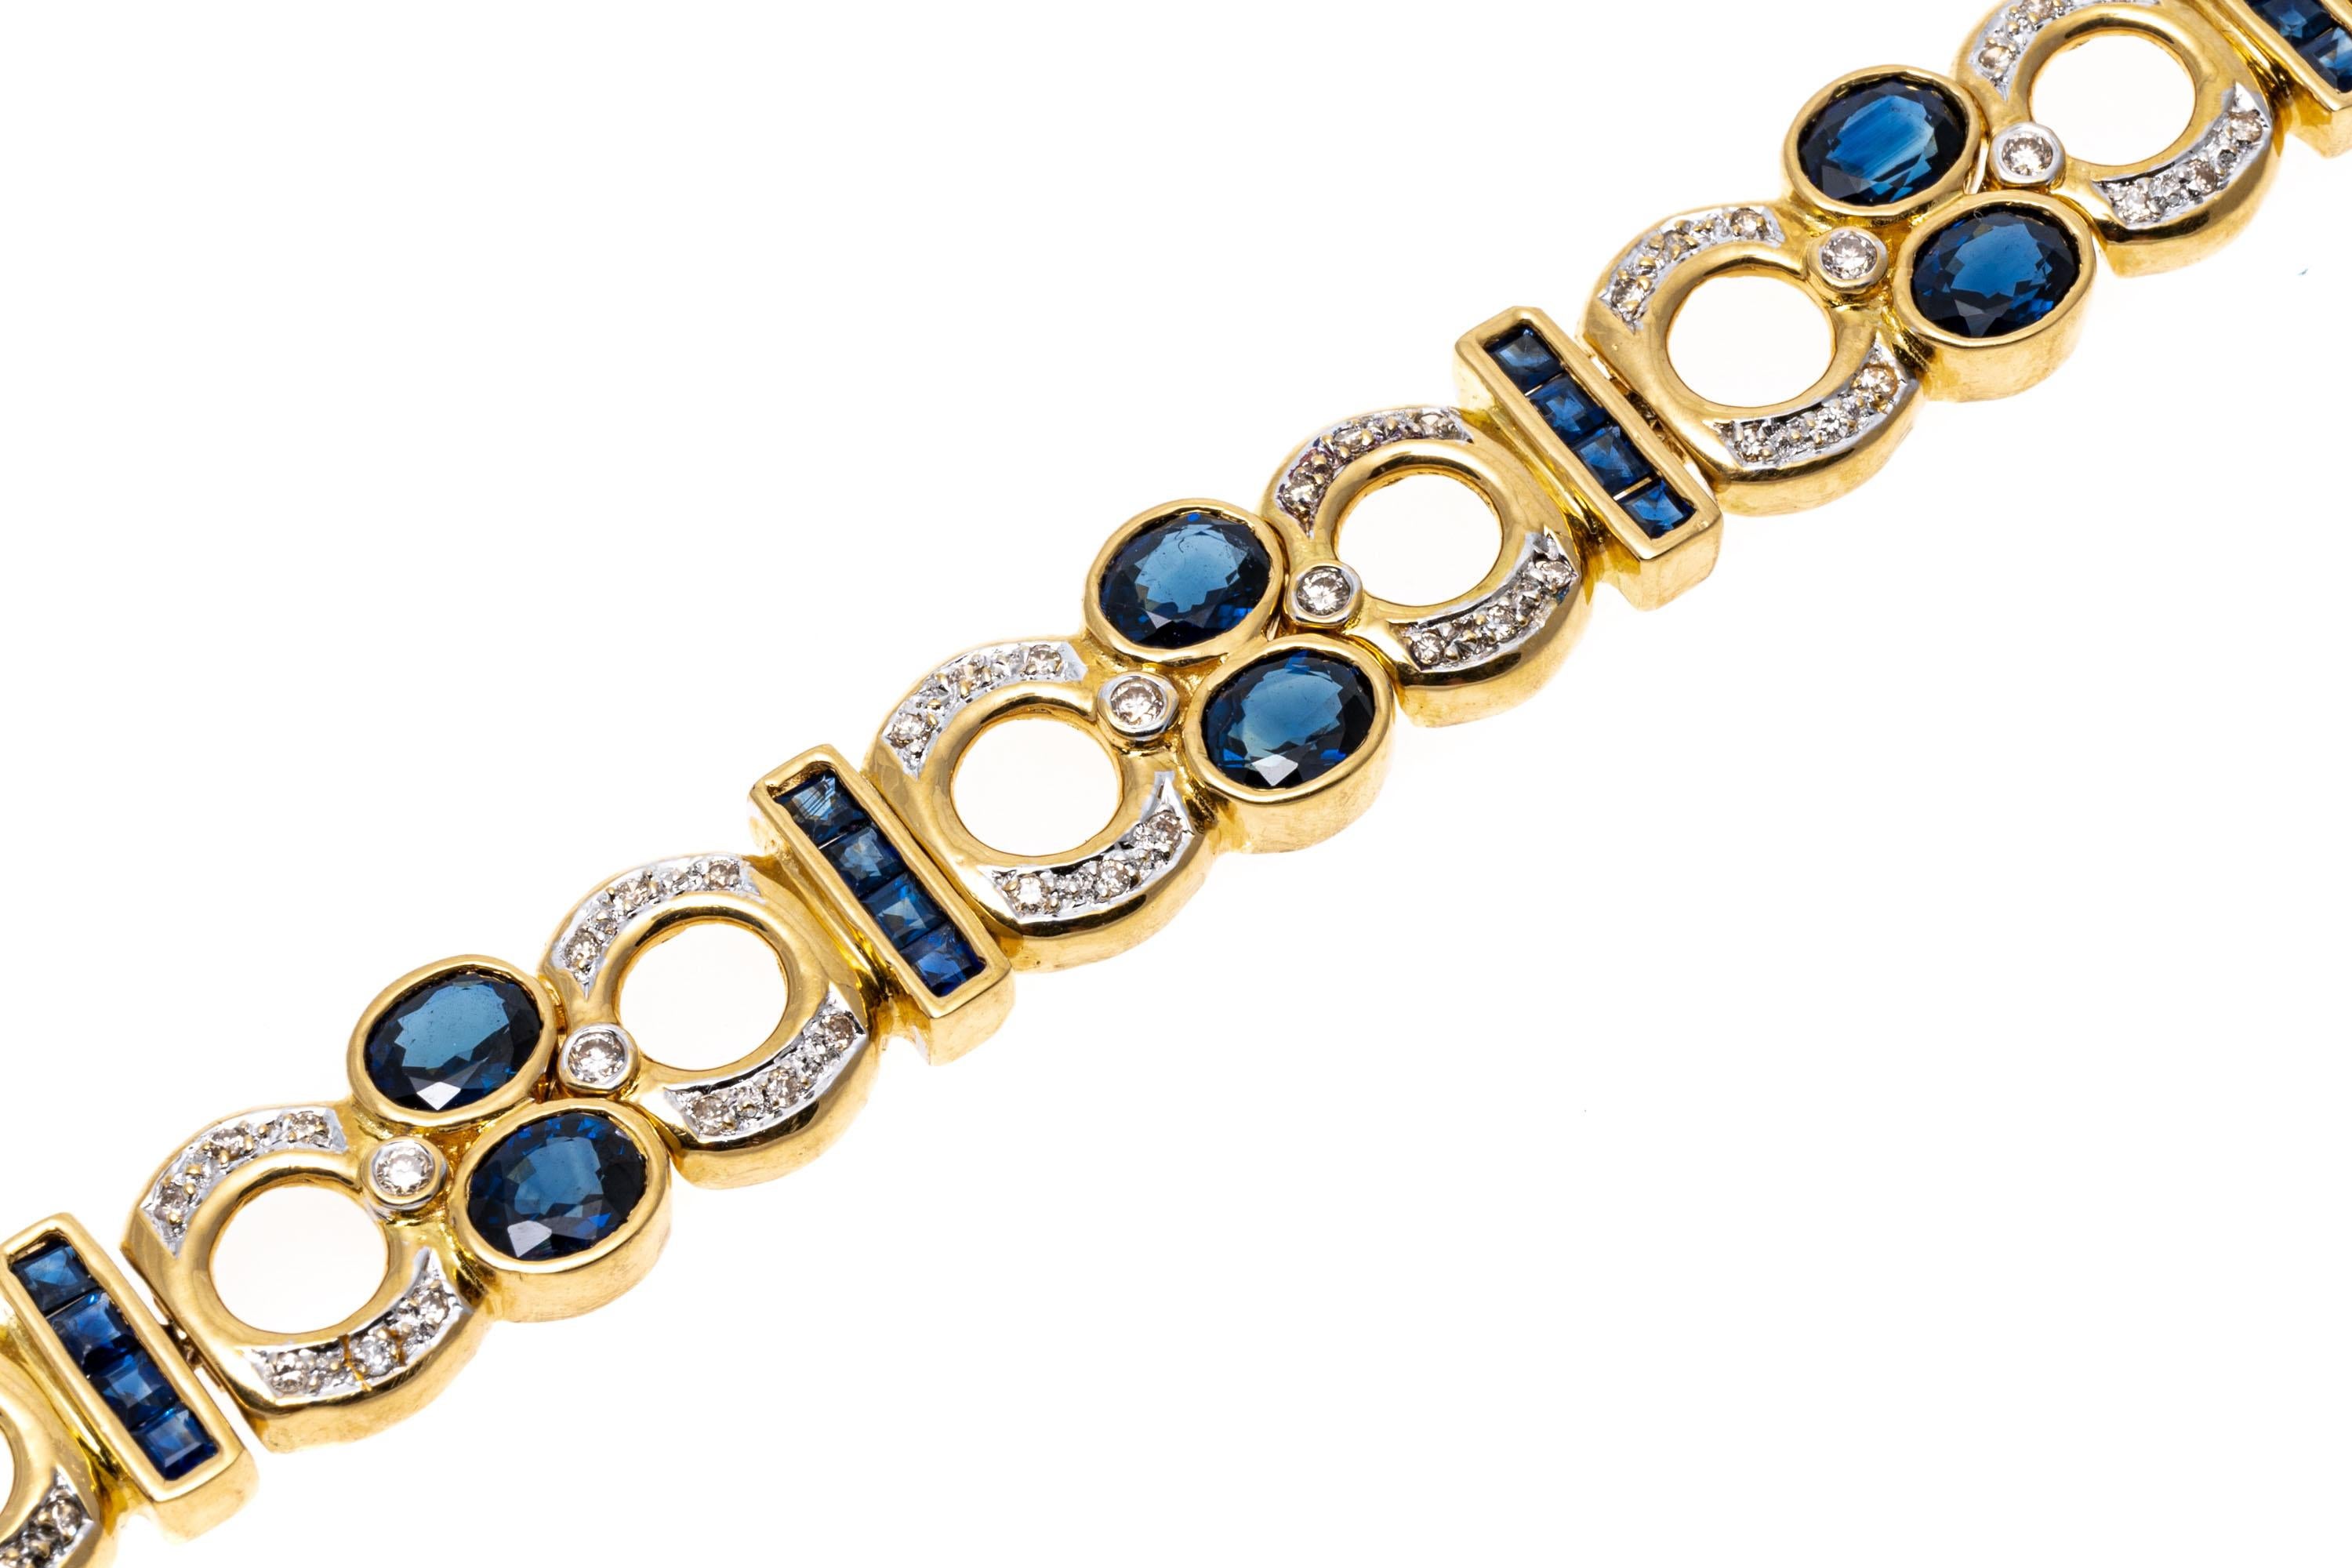 Bracelet en or jaune 18k. Ce bracelet saisissant présente des maillons ouverts à diamants ronds à facettes d'environ 0,47 TCW. Les liens en diamant sont alternés par des barres verticales de saphirs bleus taillés en calibre et sertis en canal,